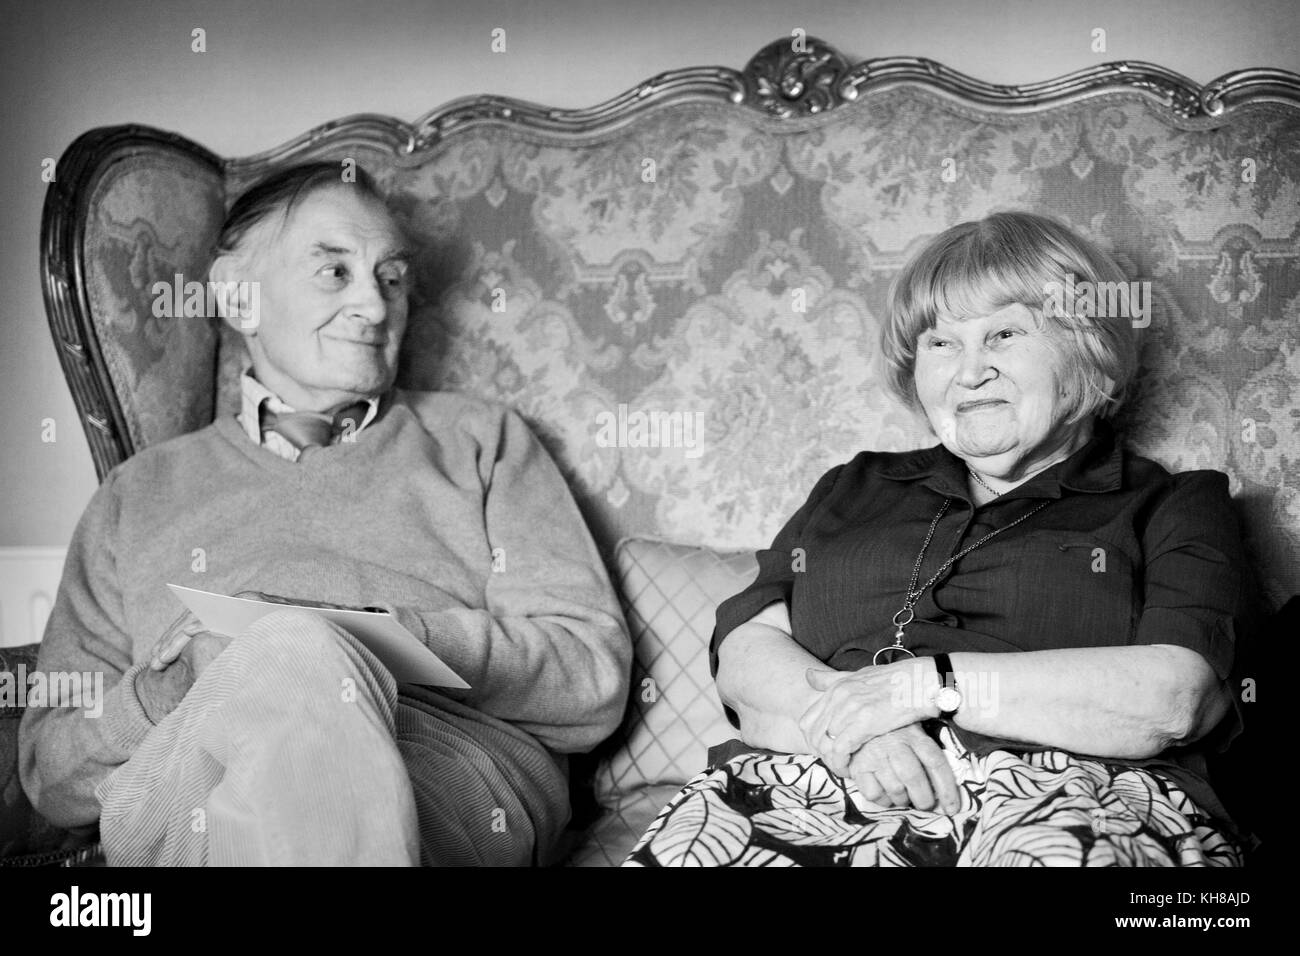 Fotógrafo Jane Brown (13 de marzo de 1925 - 21 de diciembre de 2014) y el dibujante/ilustrador Haro Hodson, B&W retrato sentado en el sofá Foto de stock